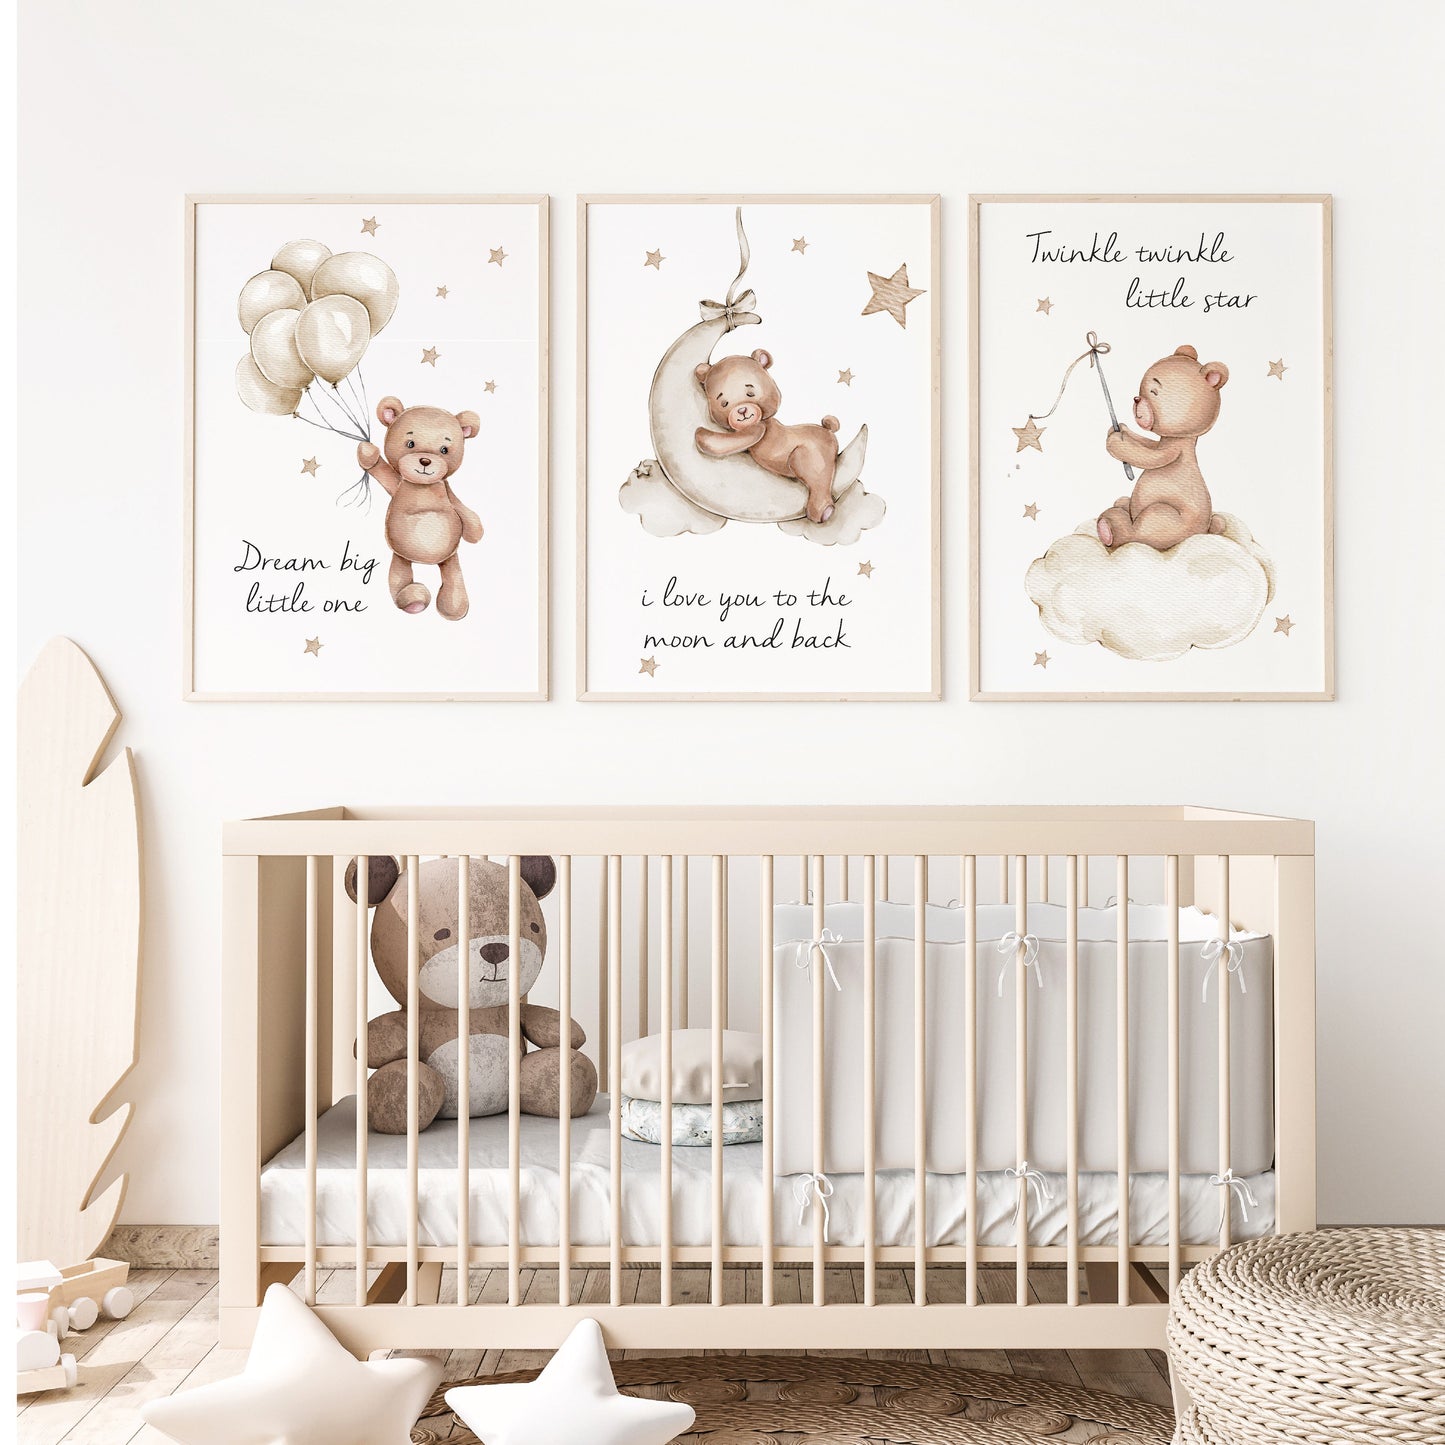 Babykamer posters set 3 stuks - Kinderkamer decoratie - Teddy beer met ballon sterren - Kinder poster - Beige